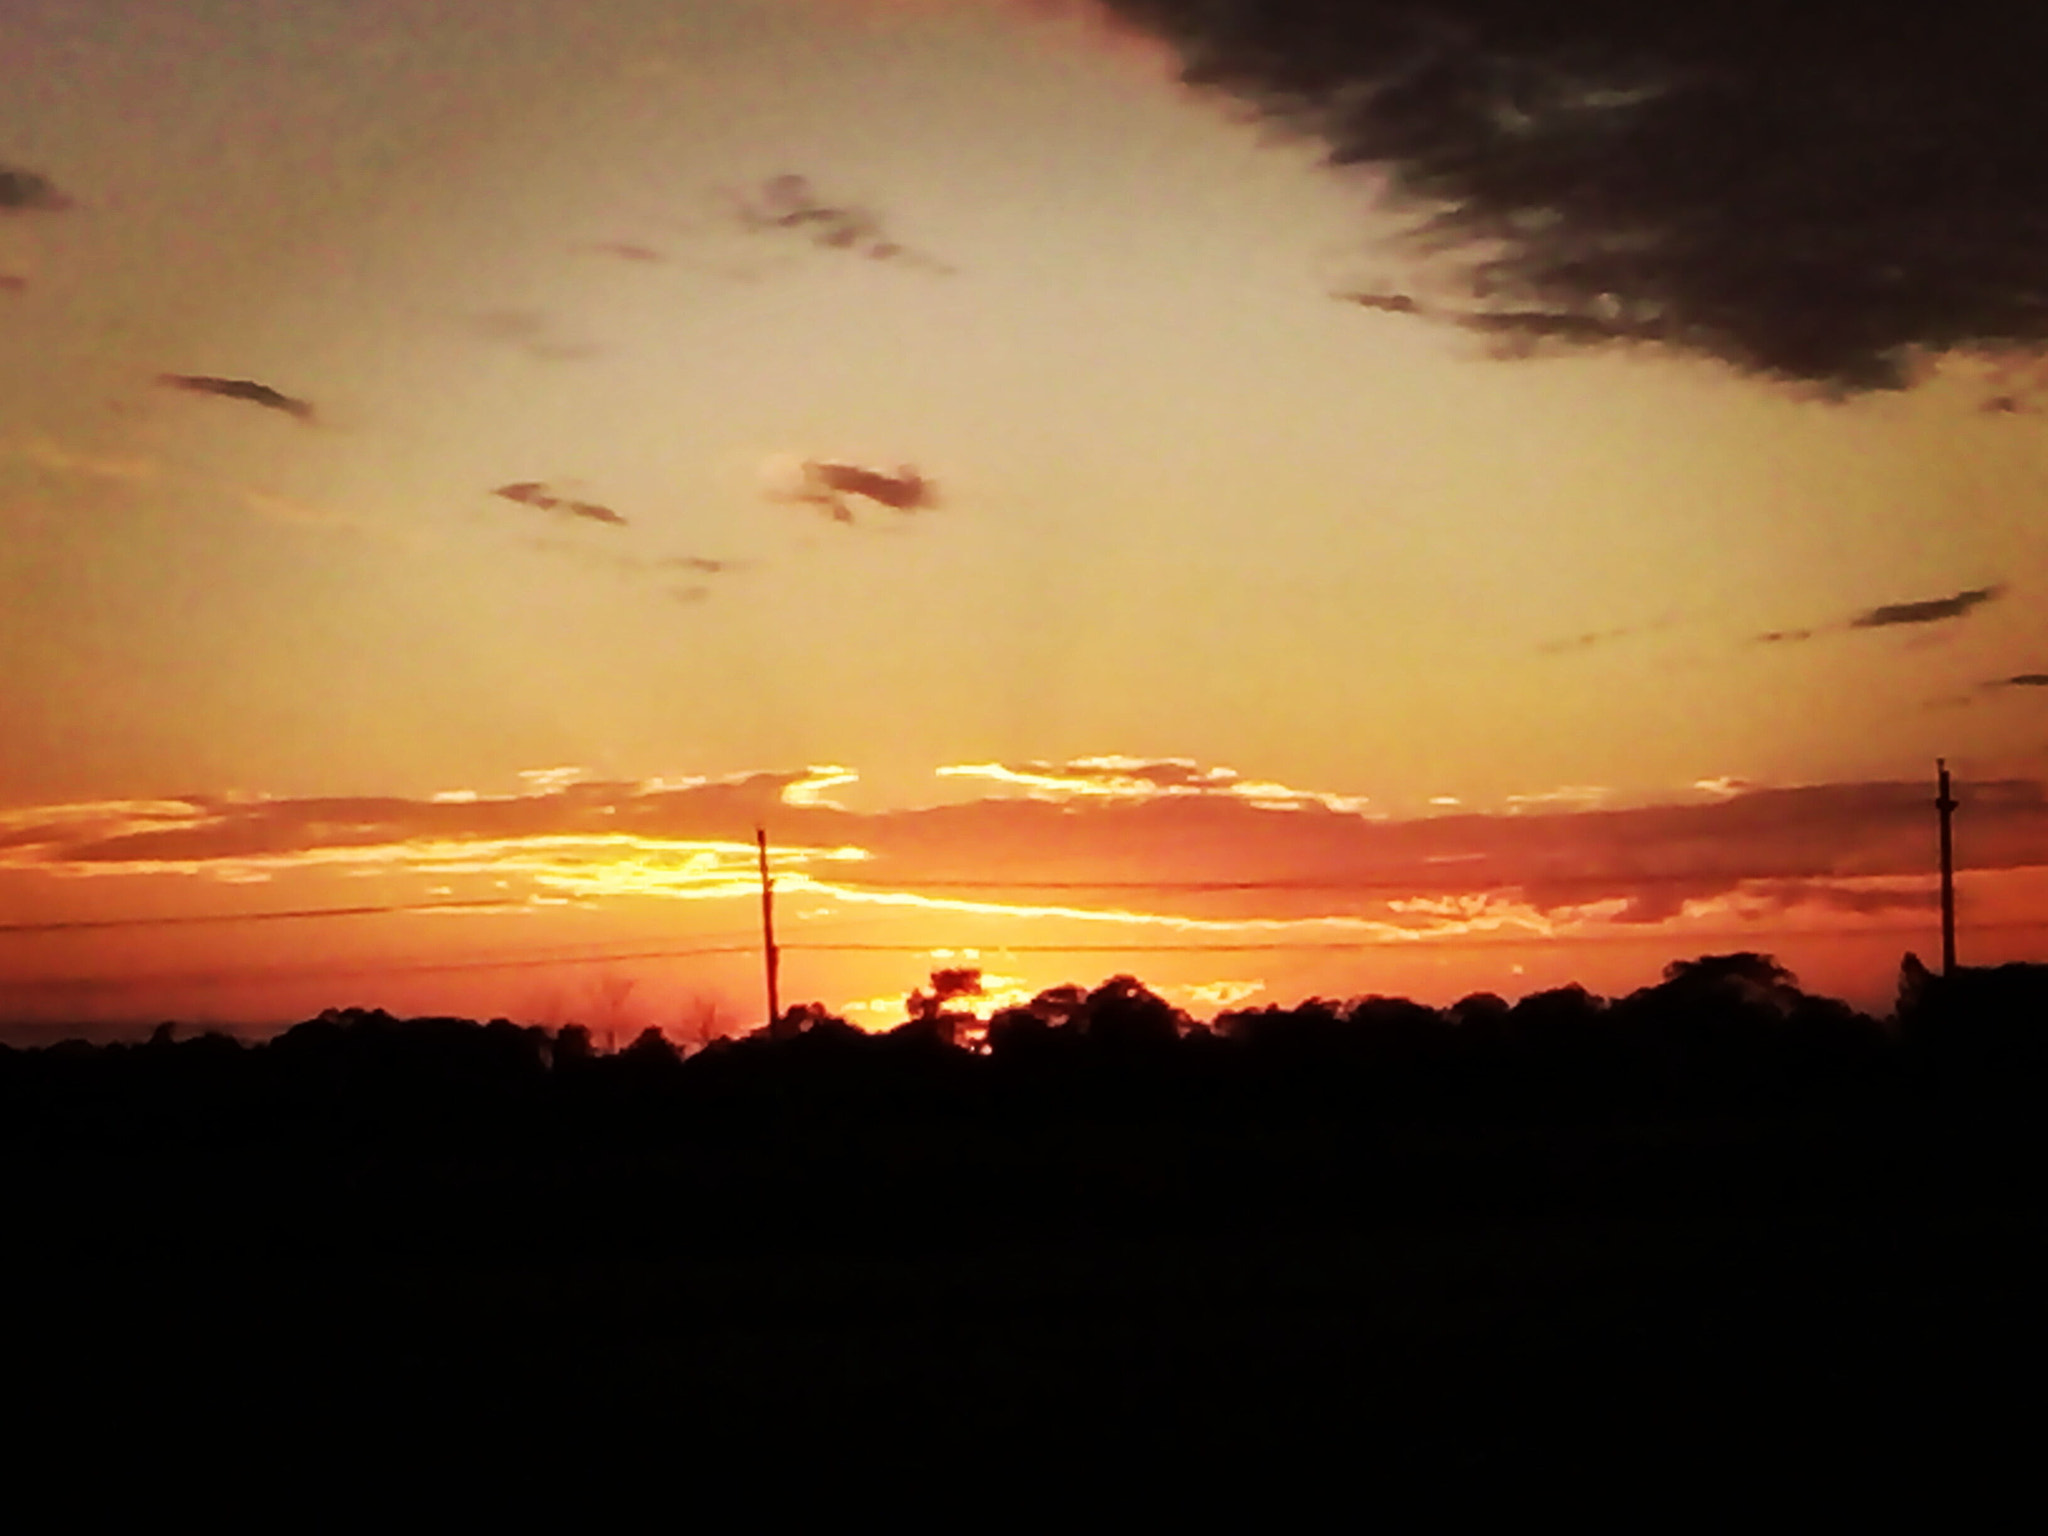 OPPO 1201 sample photo. Wonderful sunset photography